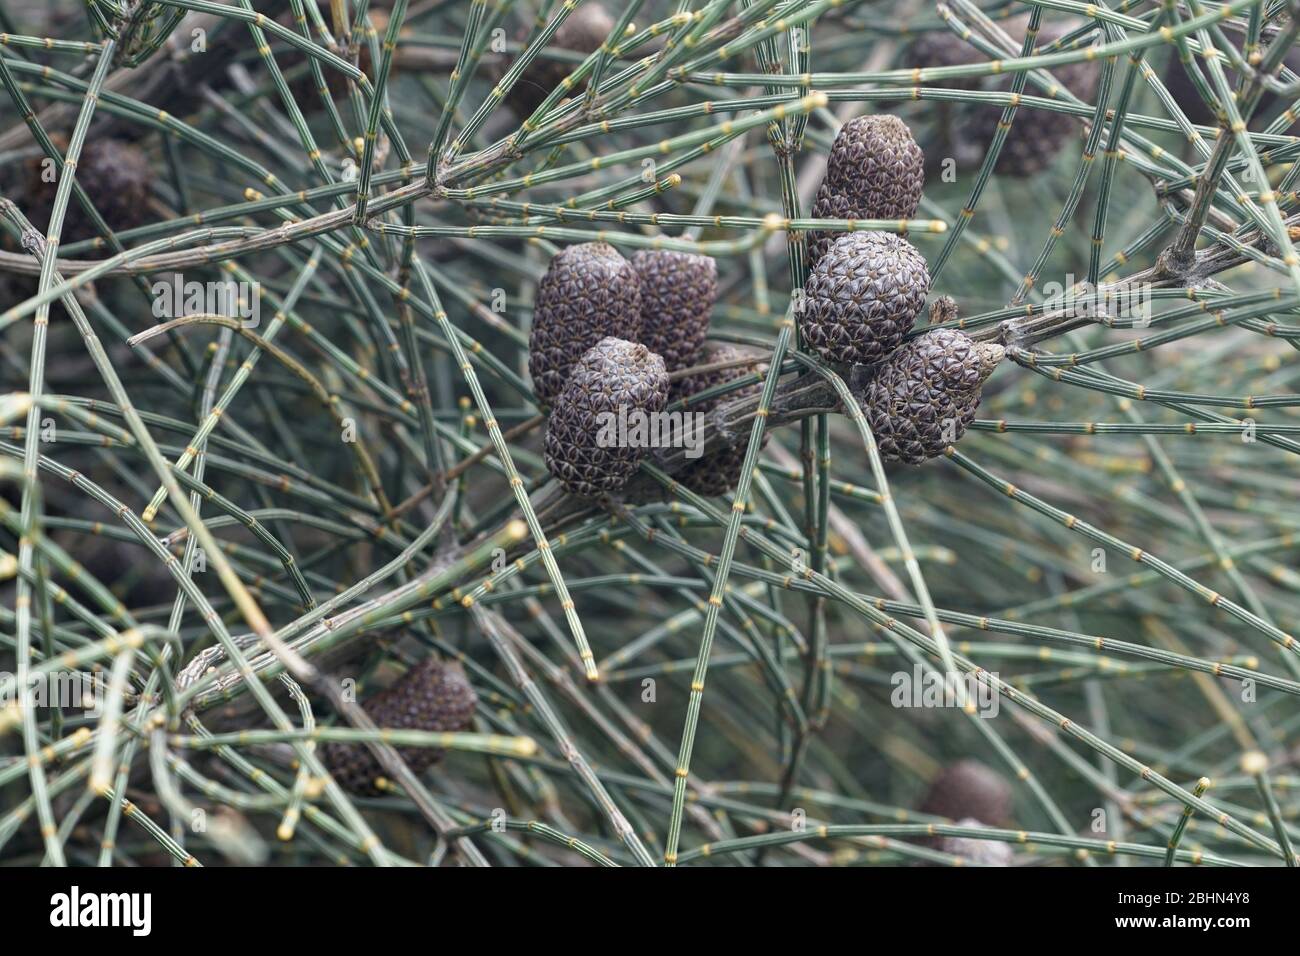 Casuarina pods de graines et feuilles modifiées dans la fermeture. Aussi connu sous le nom de chêne-elle, un arbre indigène australien de shruby. Banque D'Images